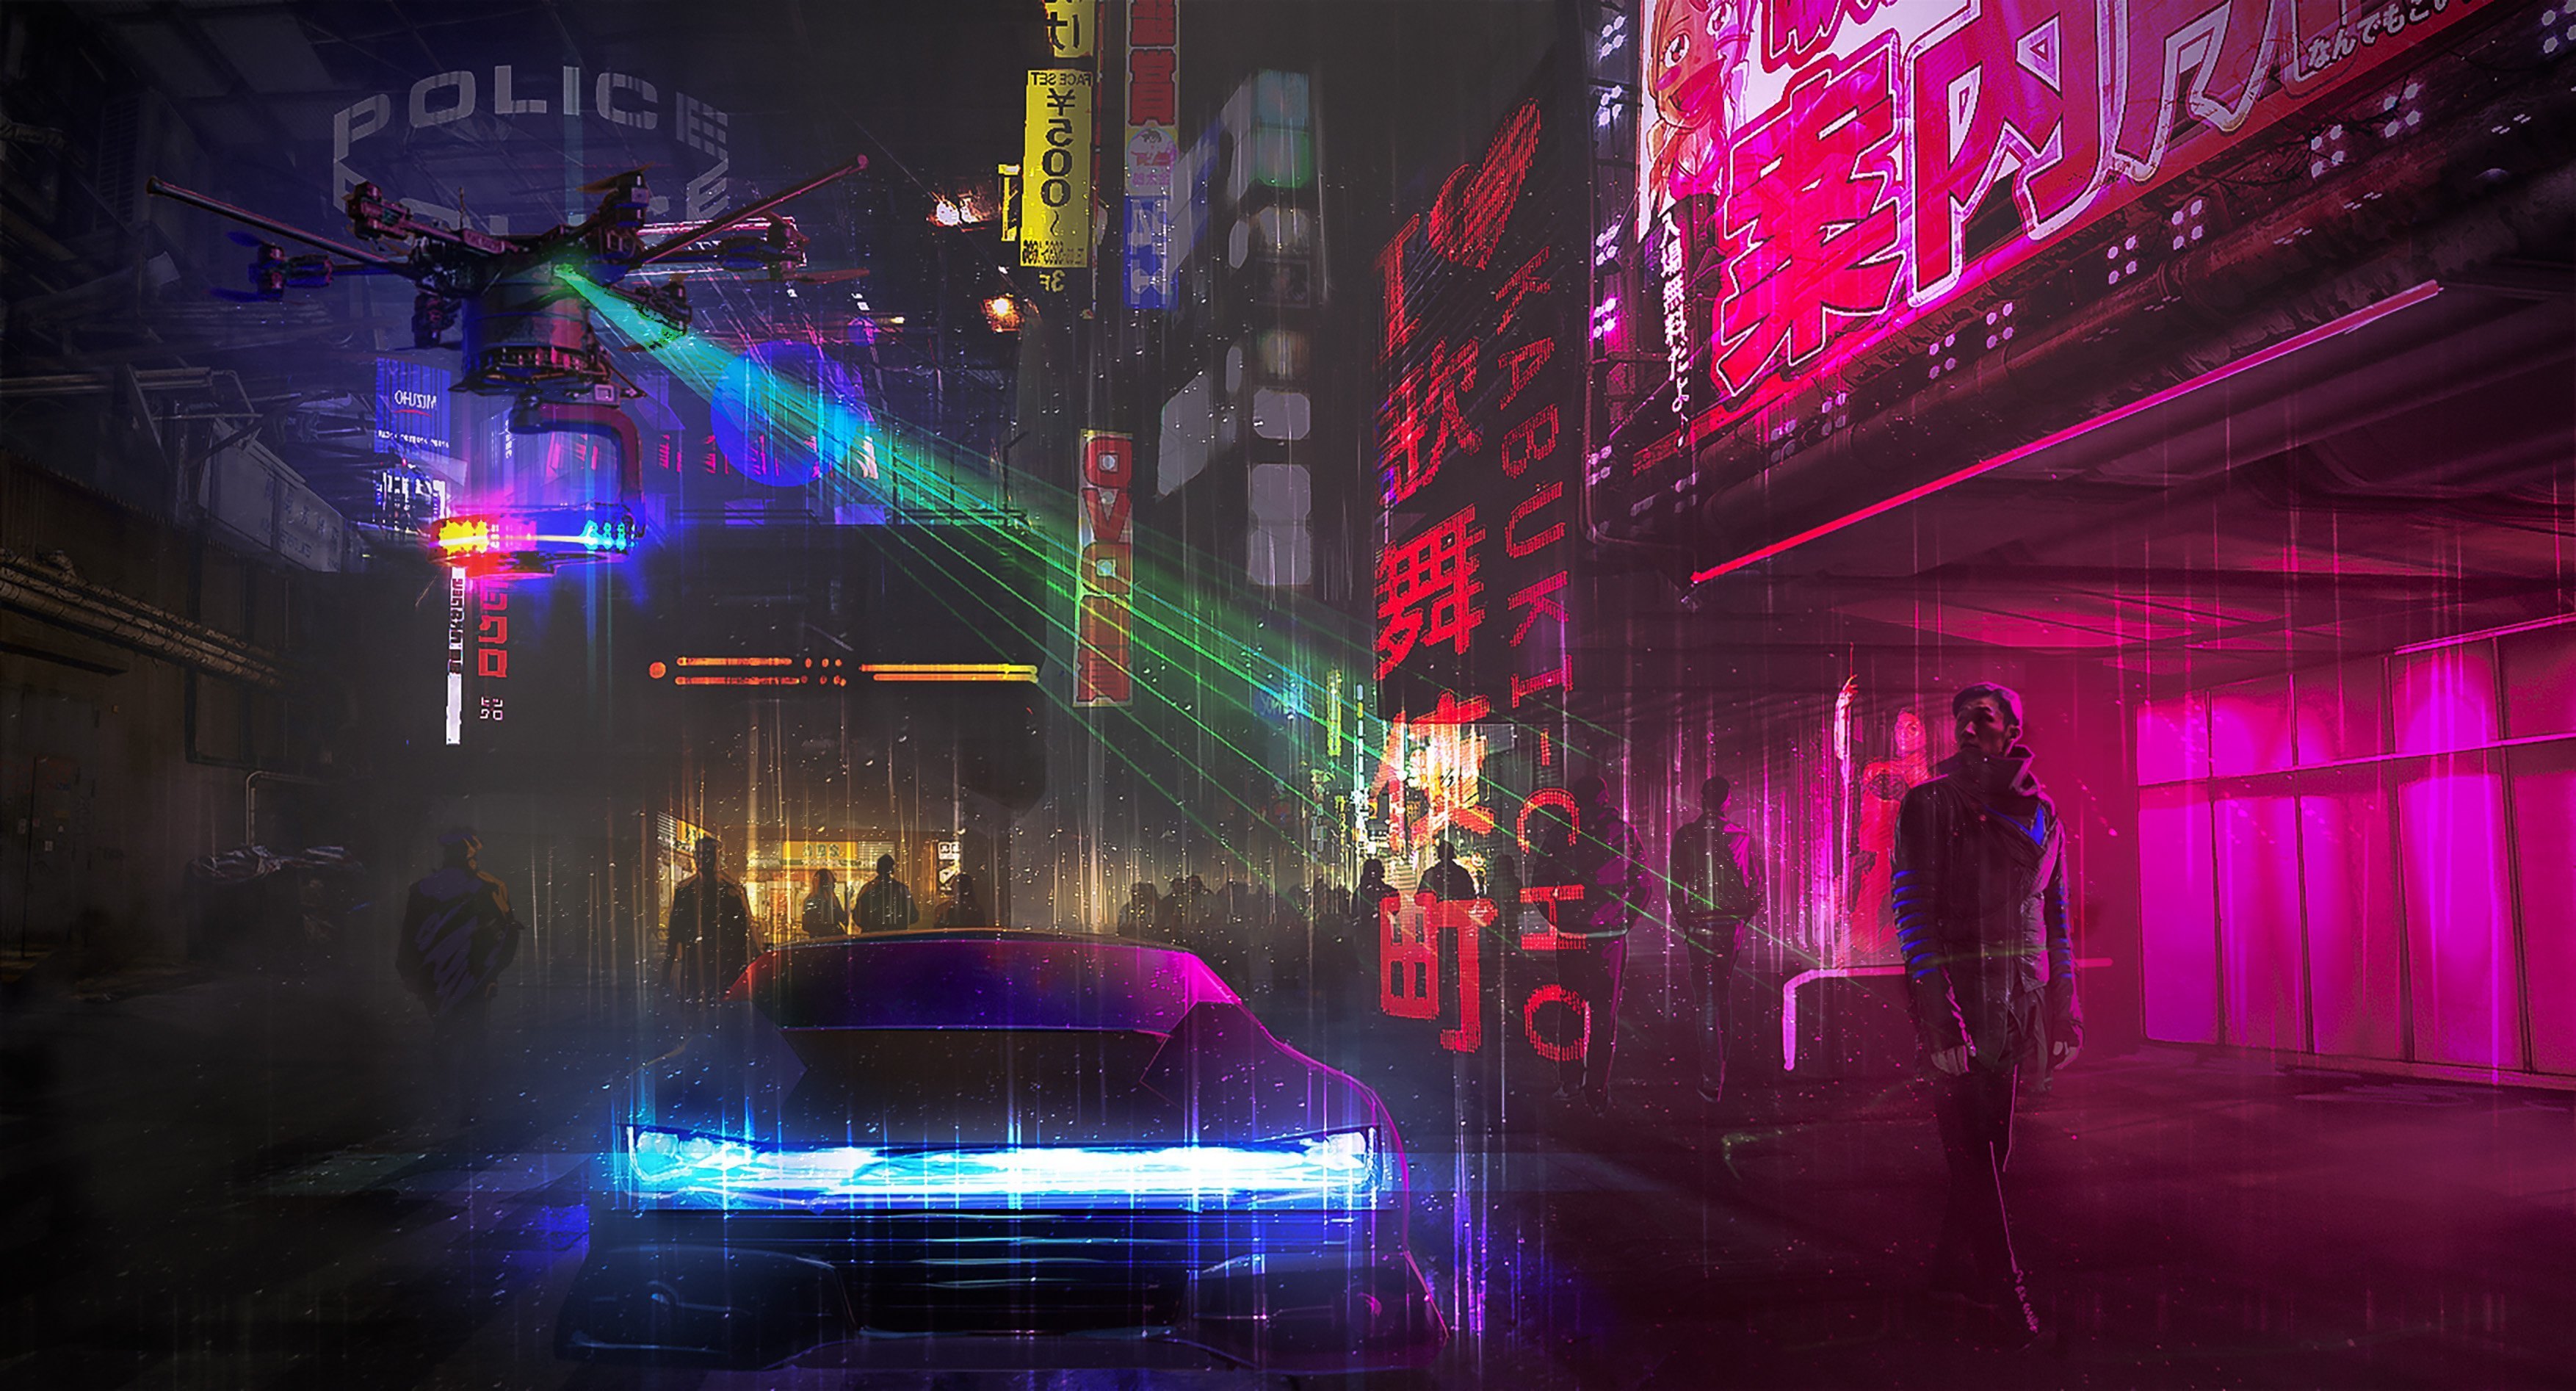 Night city текст cyberpunk фото 103